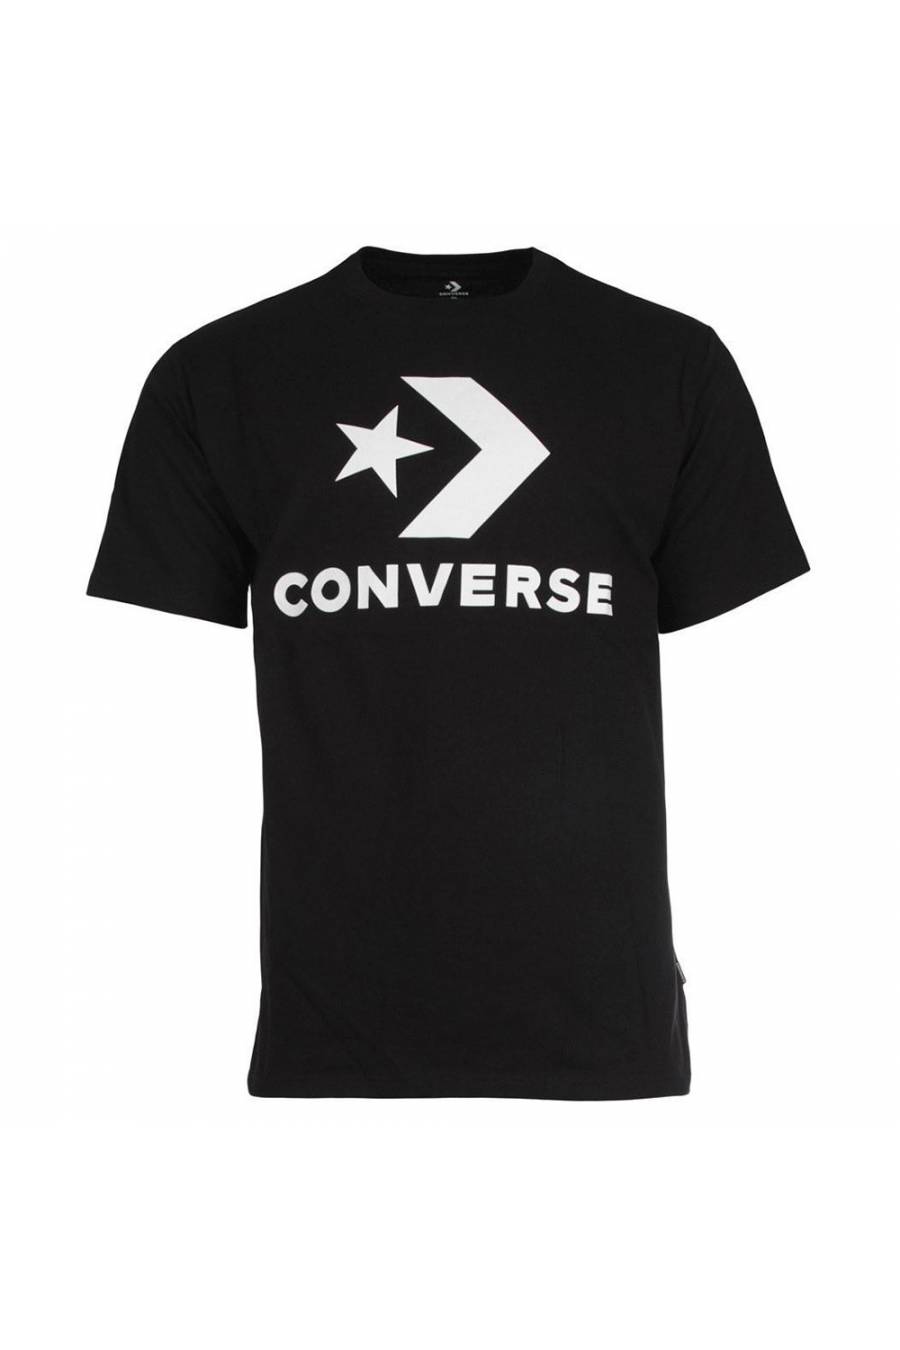 Camiseta Converse Star Chevron 10024067-A01